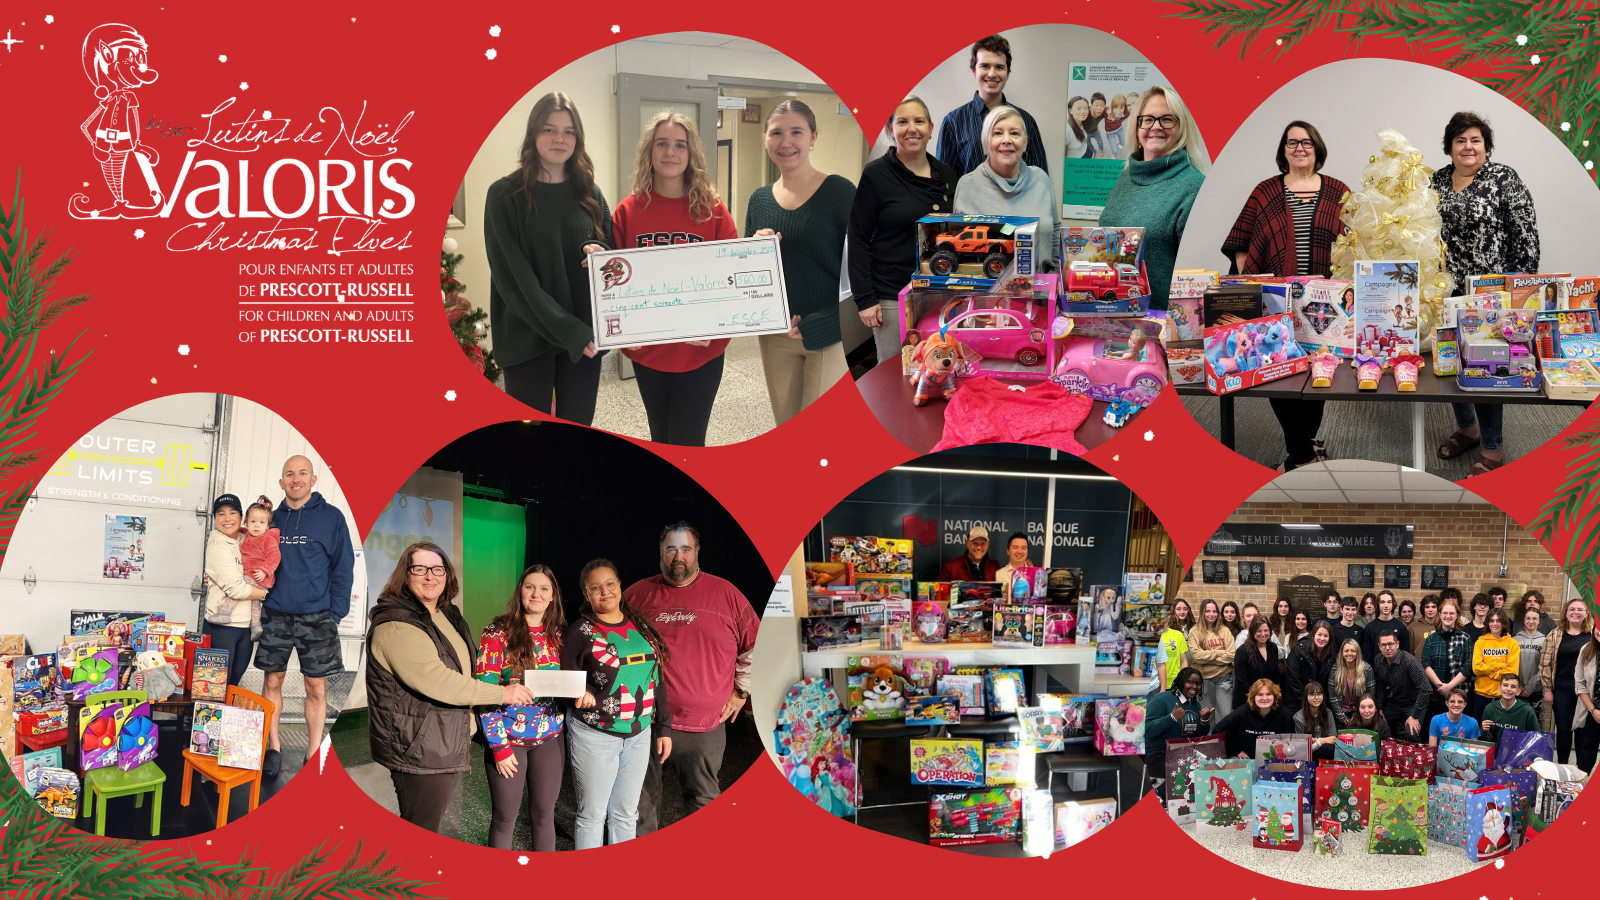 Montage photo avec plusieurs partenaires communautaires et membres de la communauté entouré de cadeaux offerts aux enfants et adolescents pour la campagne de Lutins de Noël de Valoris.